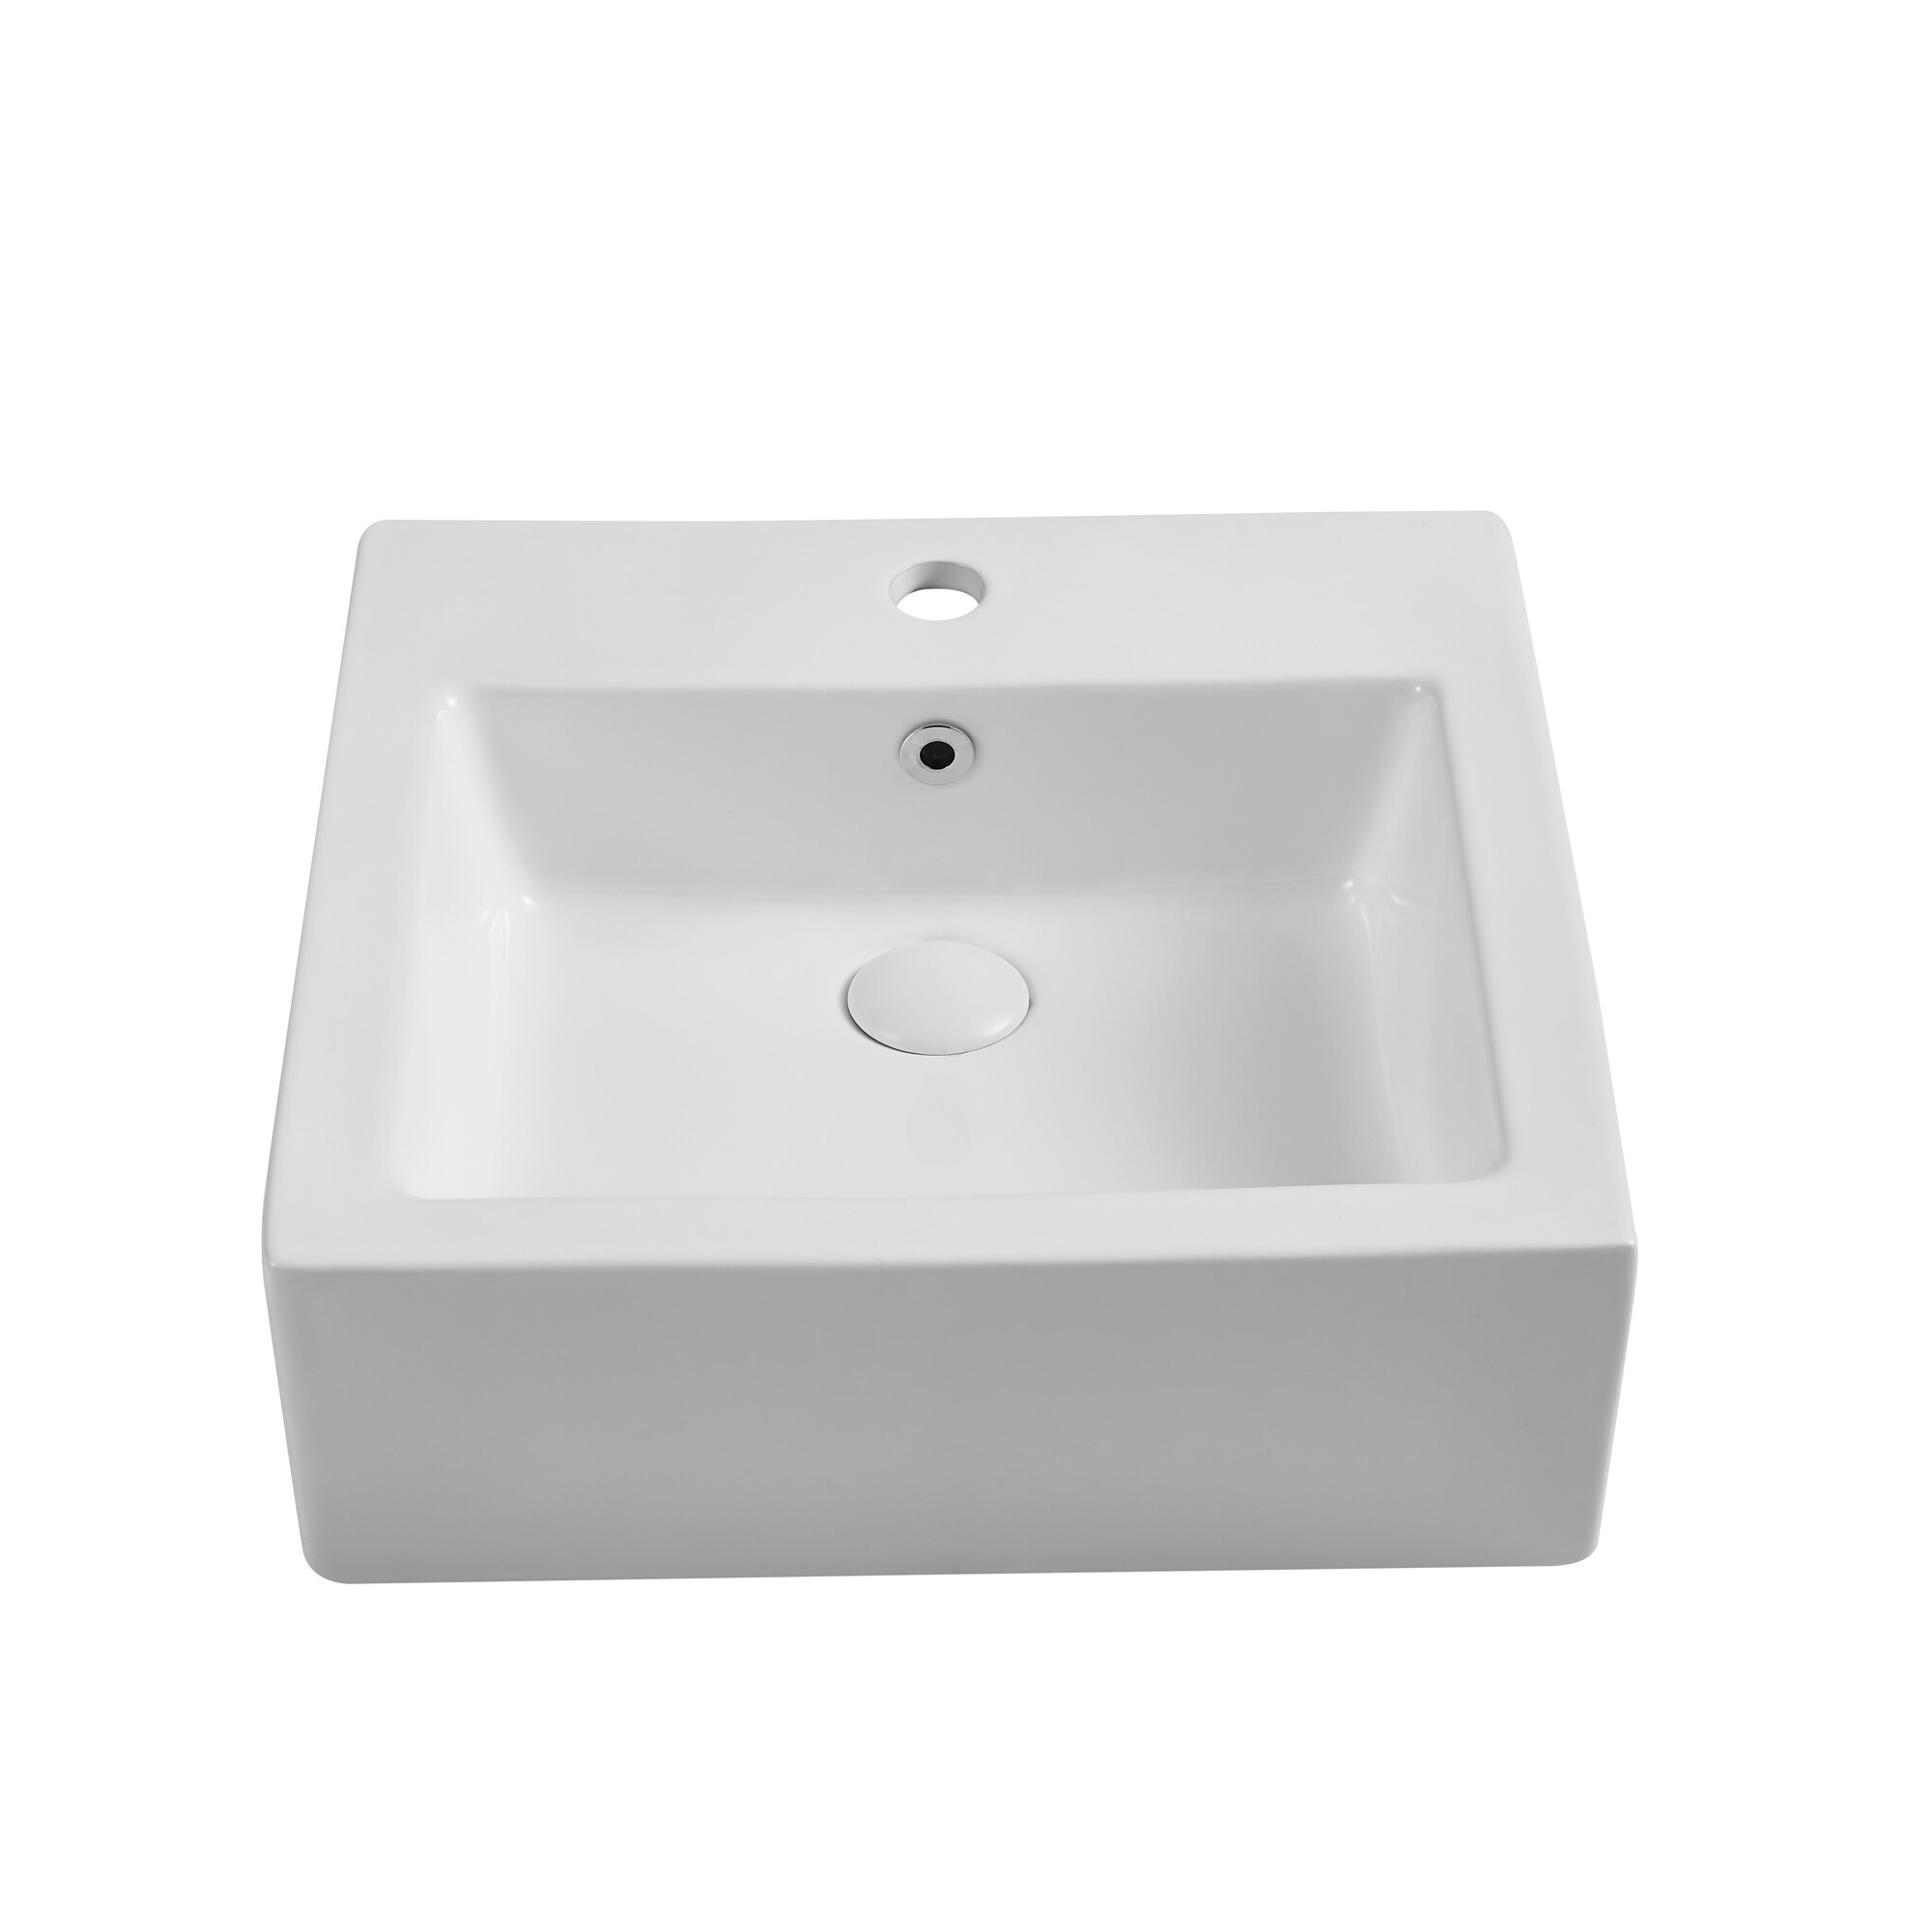 カメラ レンズ(単焦点) CASAINC White Ceramic Vessel Square Modern Bathroom Sink (18.5-in 